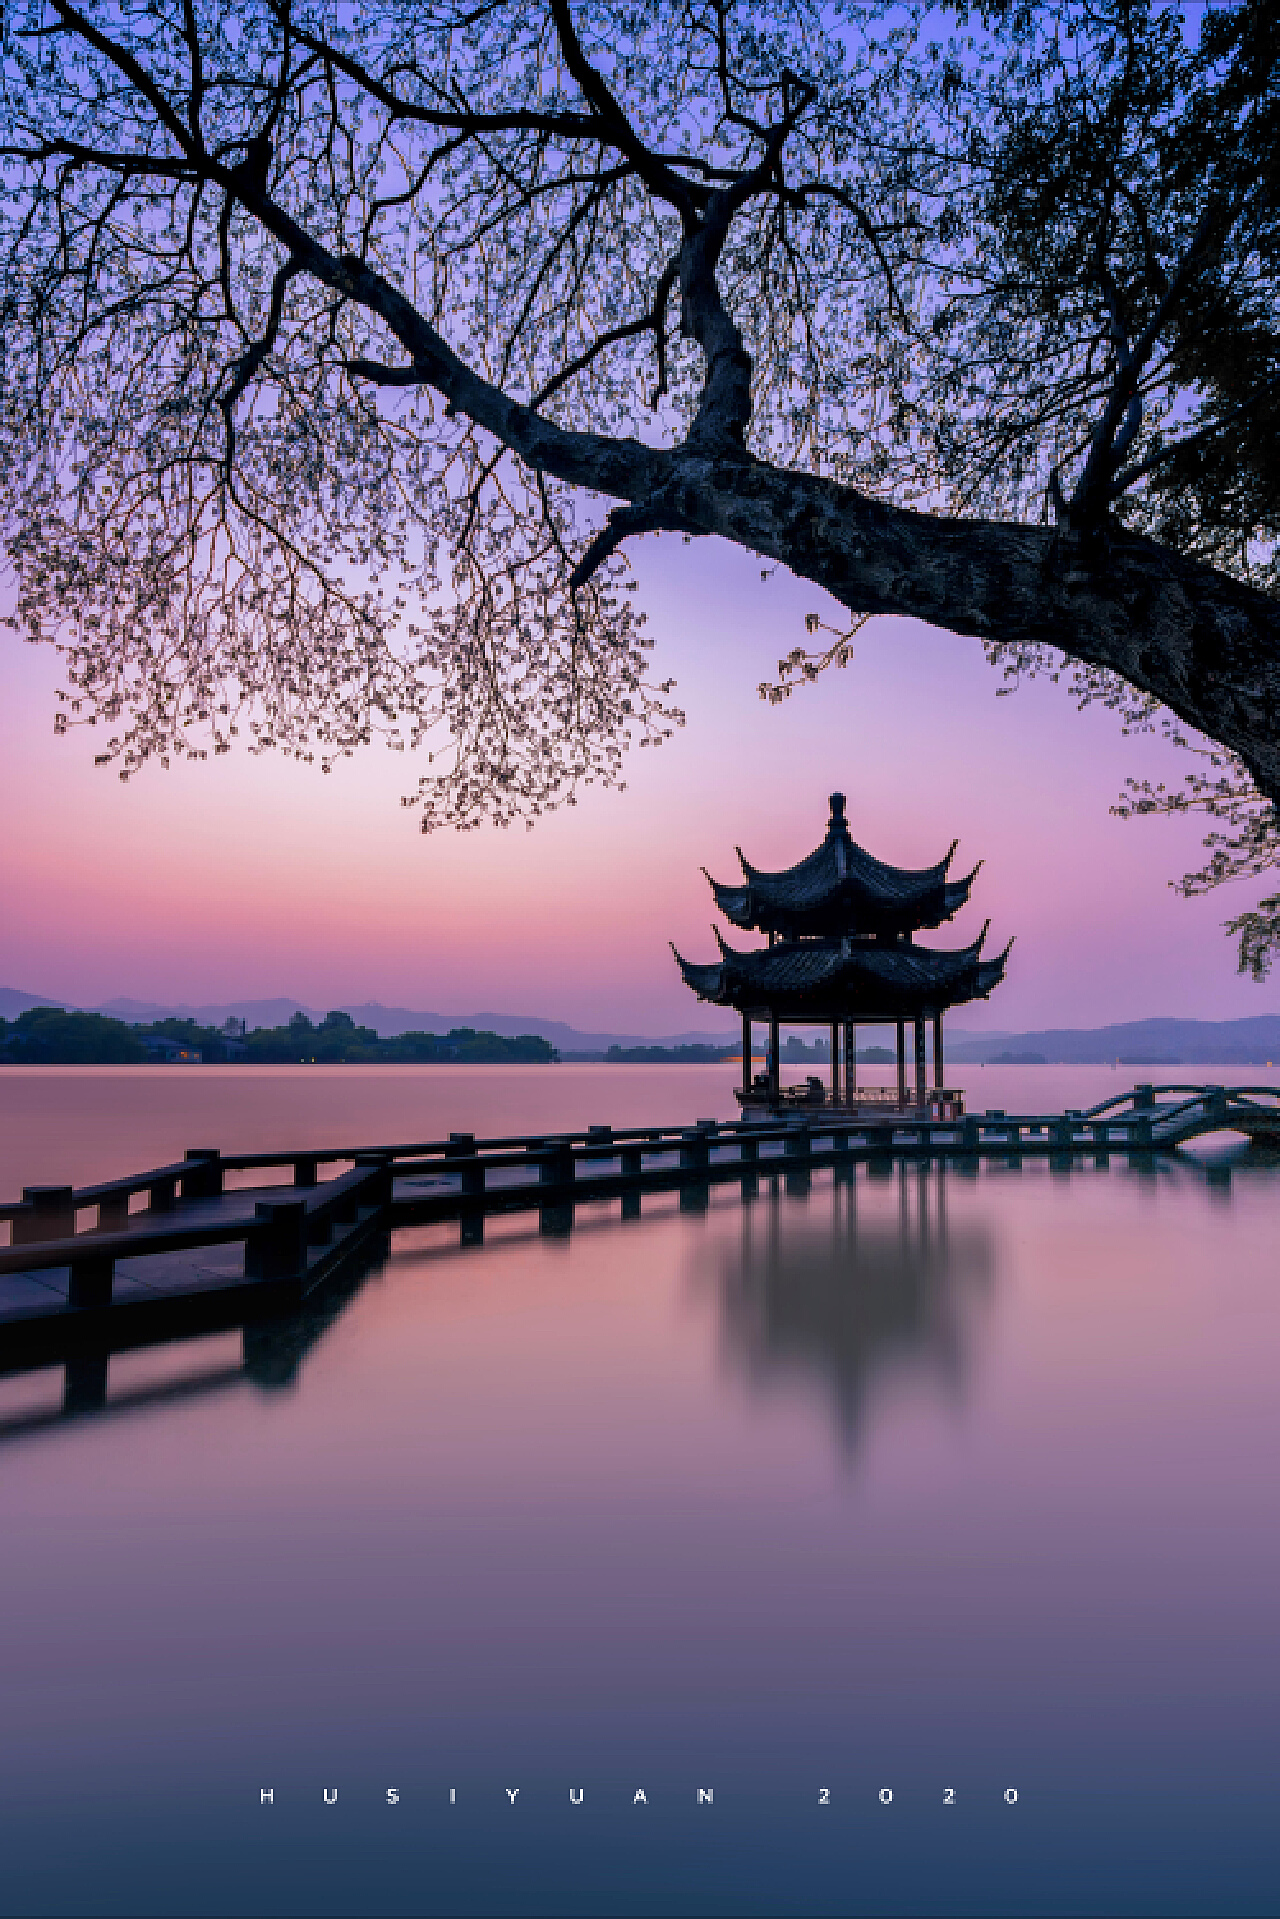 杭州西湖唯美风景图片高清桌面壁纸-风景壁纸-壁纸下载-美桌网